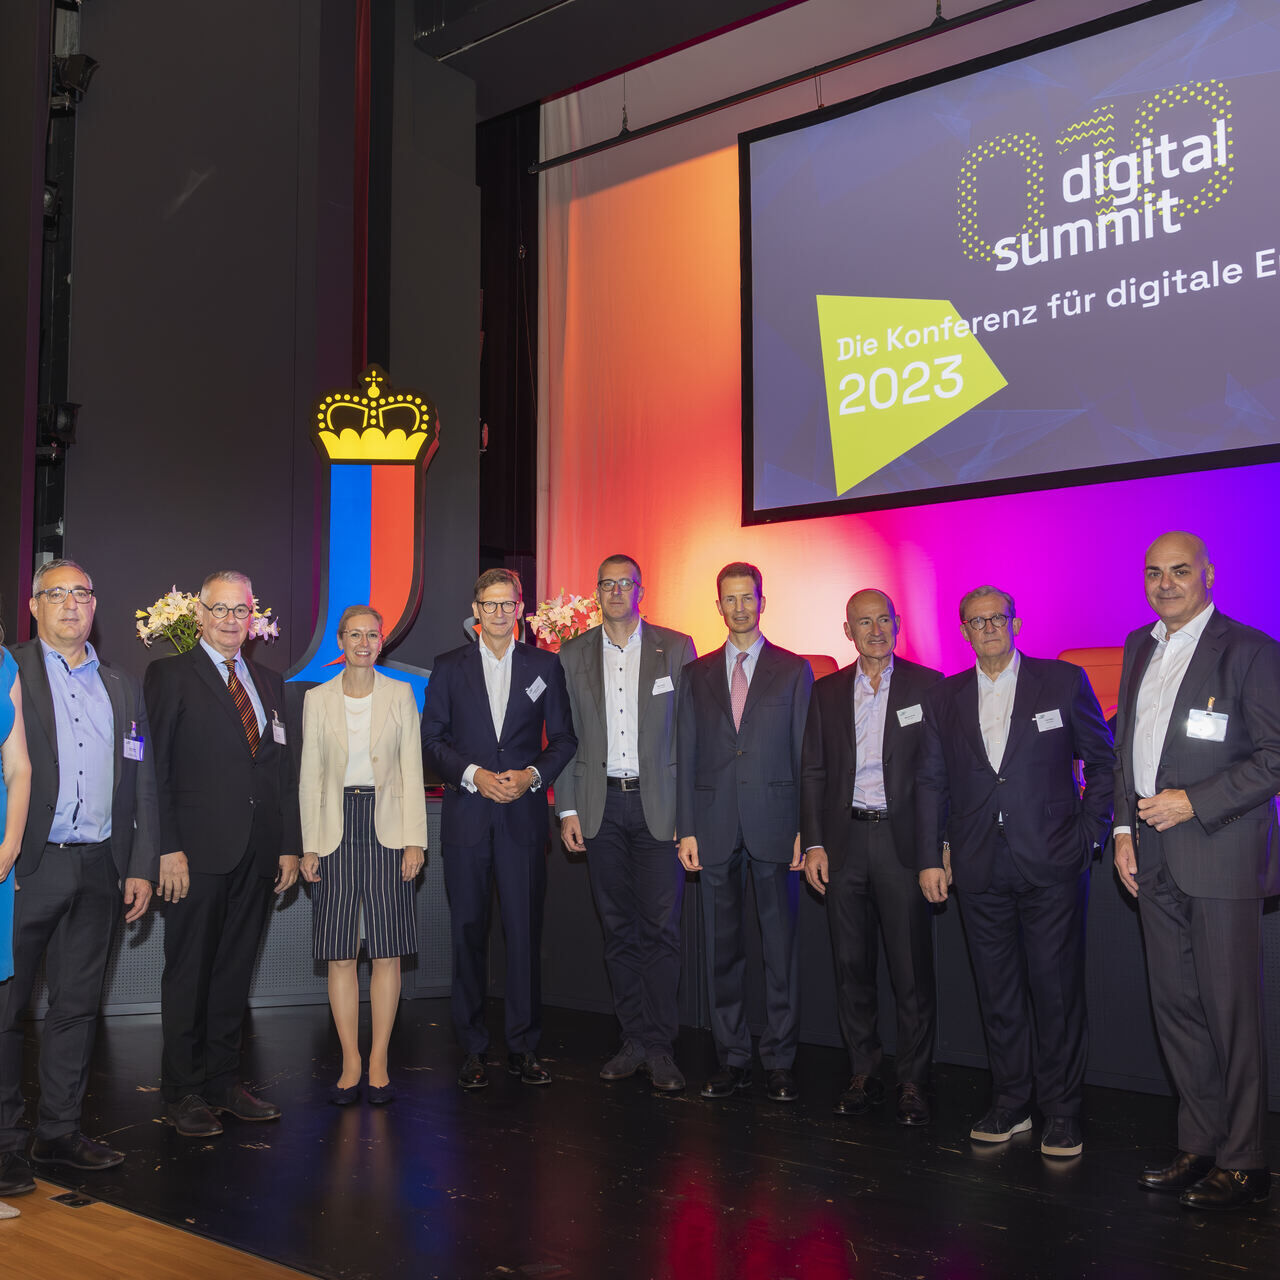 Digital Summit 2023. կազմակերպիչներ և բանախոսներ